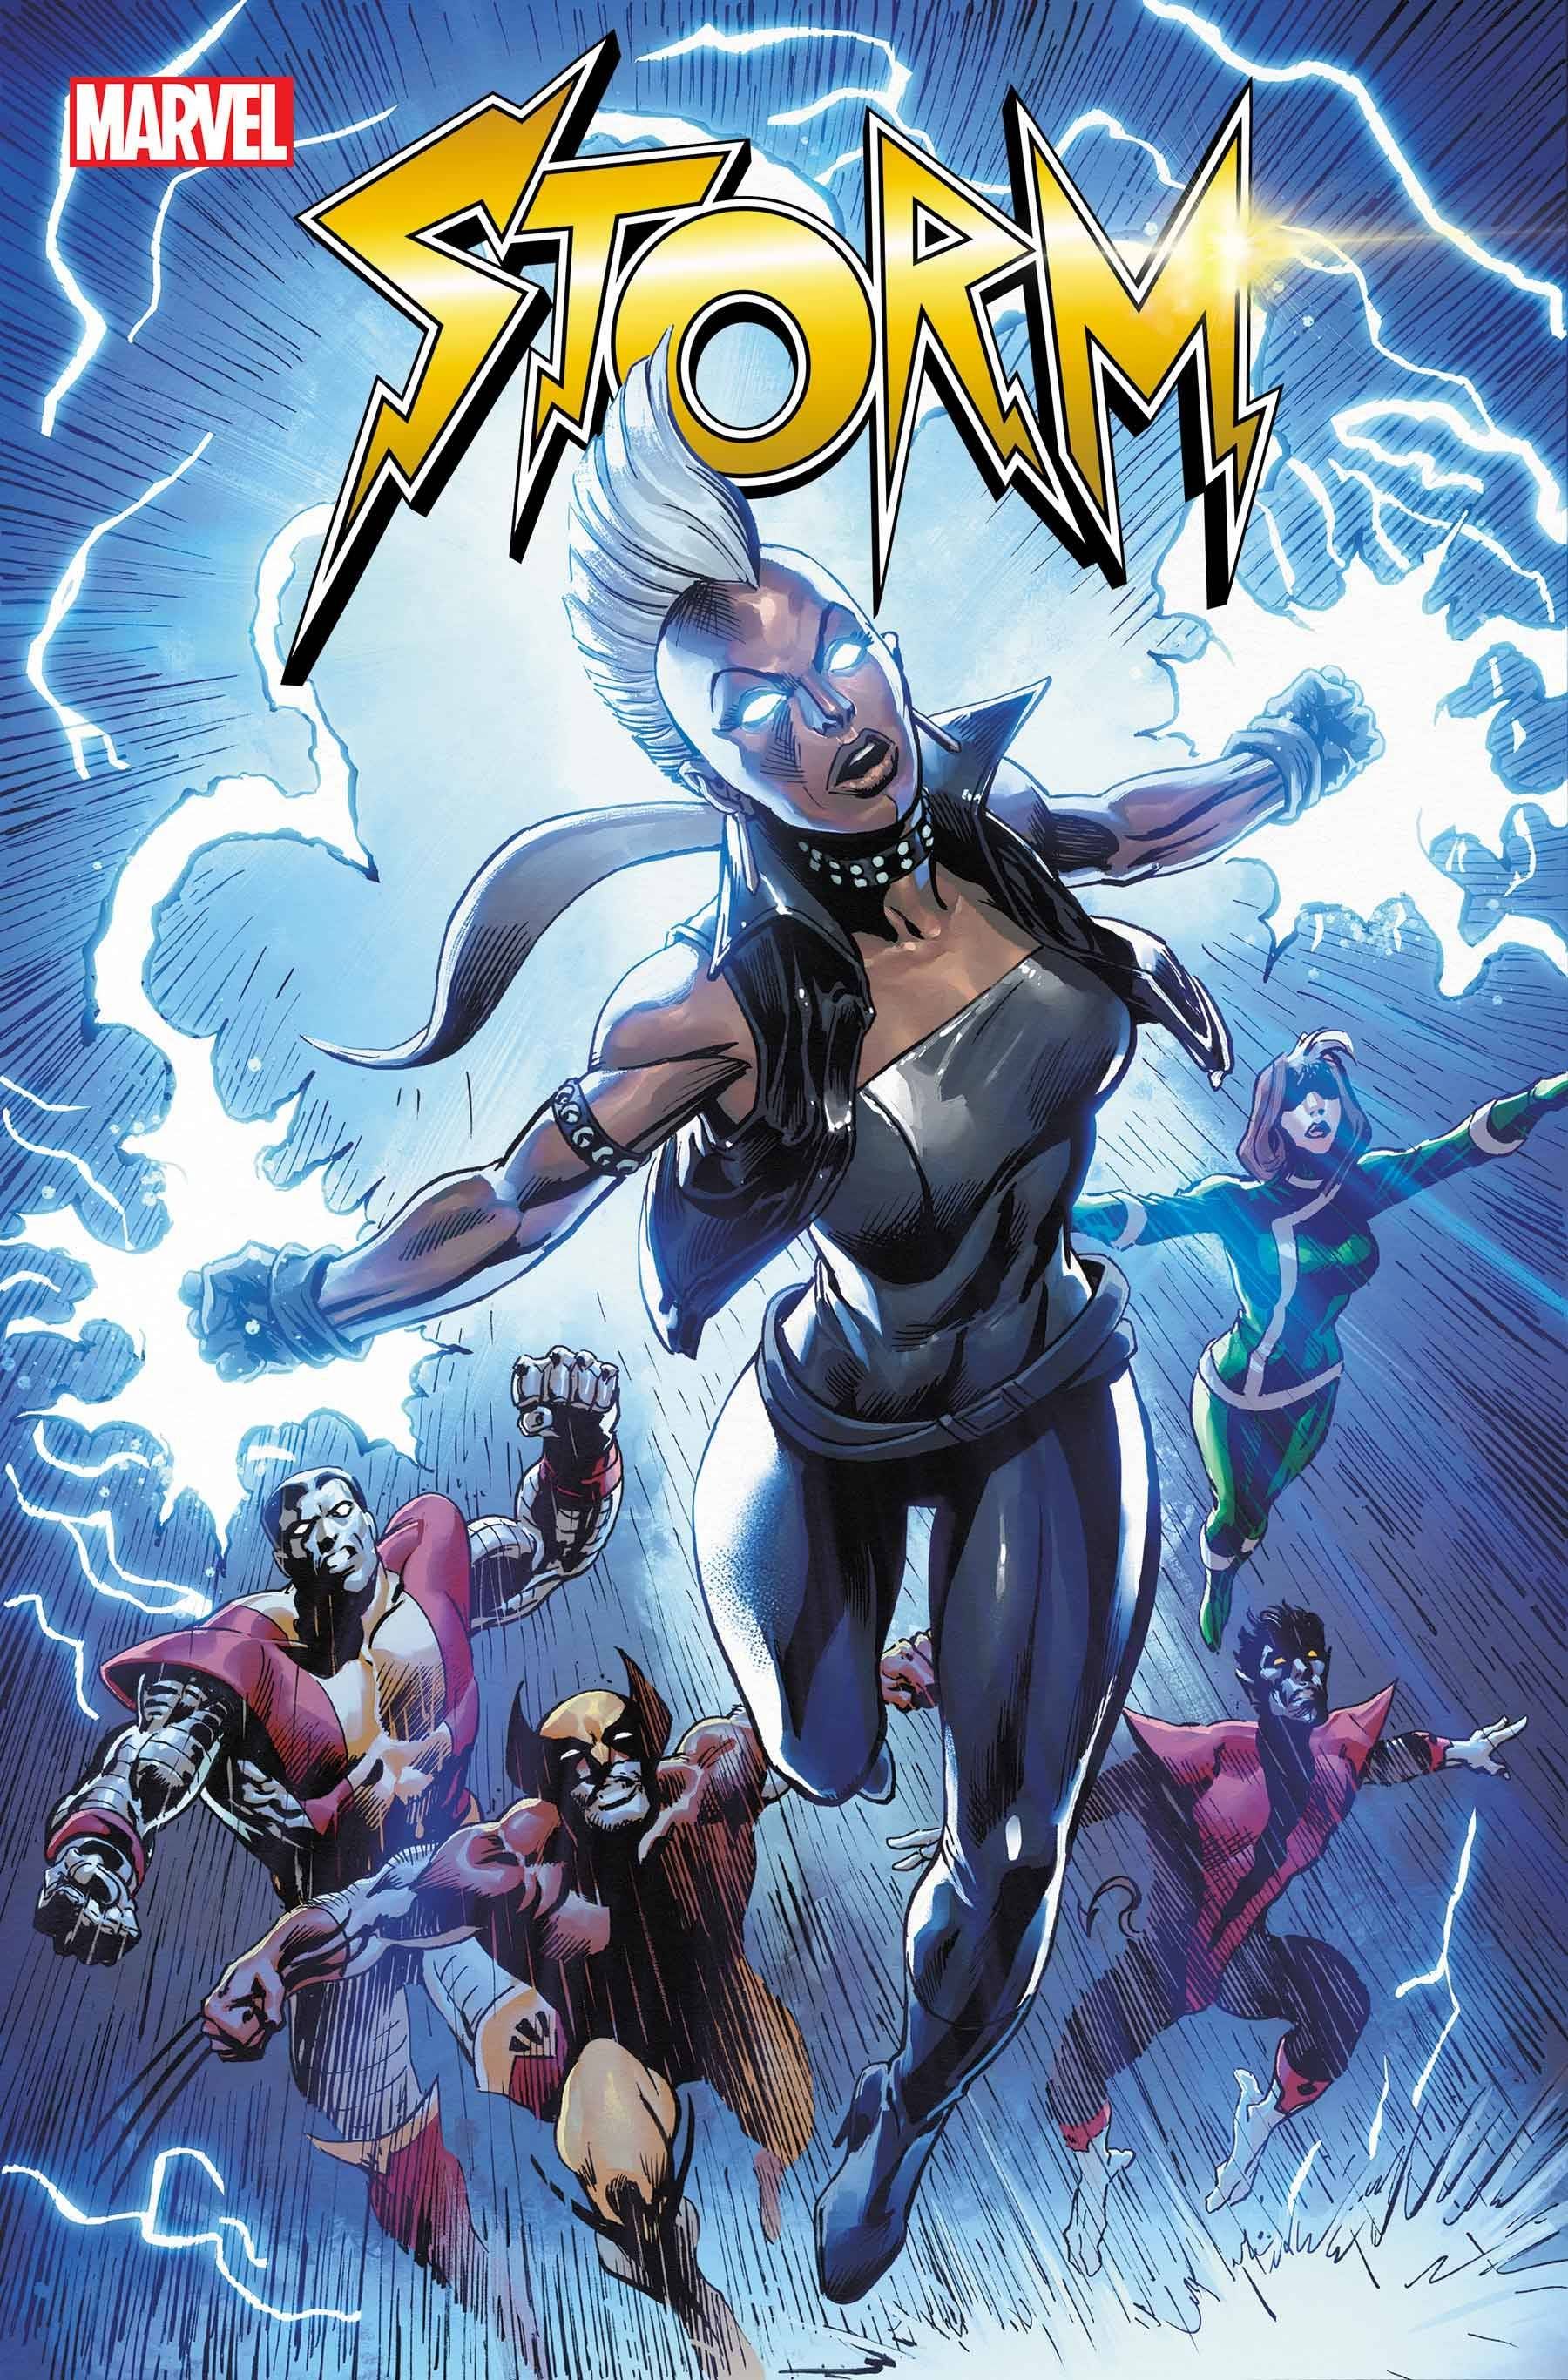 Storm #1 Comic